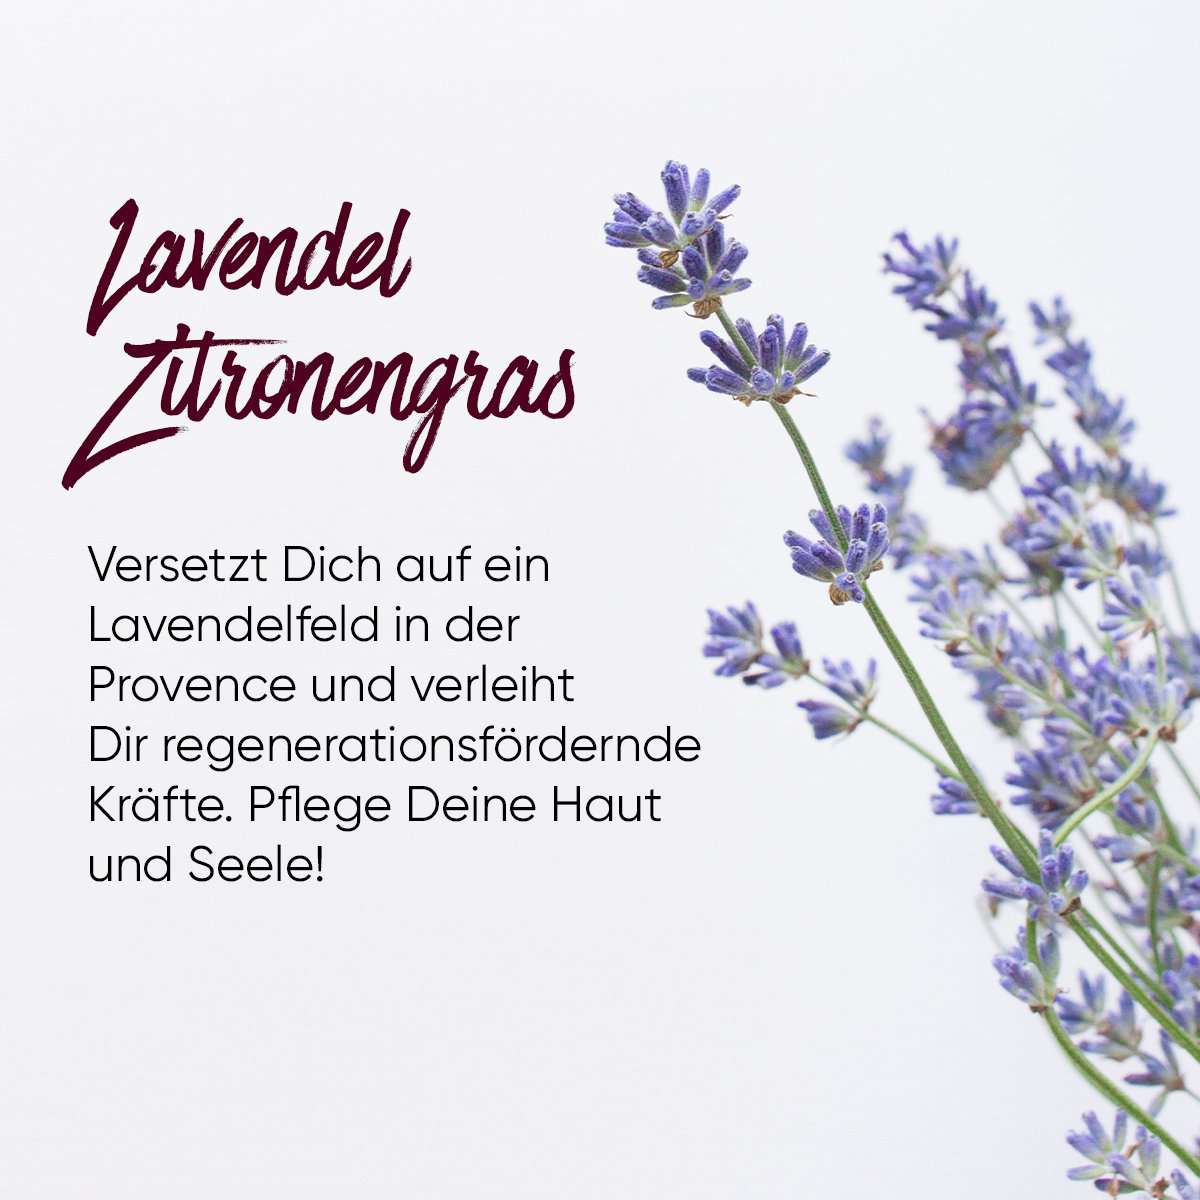 Nachfüllpaket Sause Schaumseife Lavendel Zitronengras, 20 Tabletten